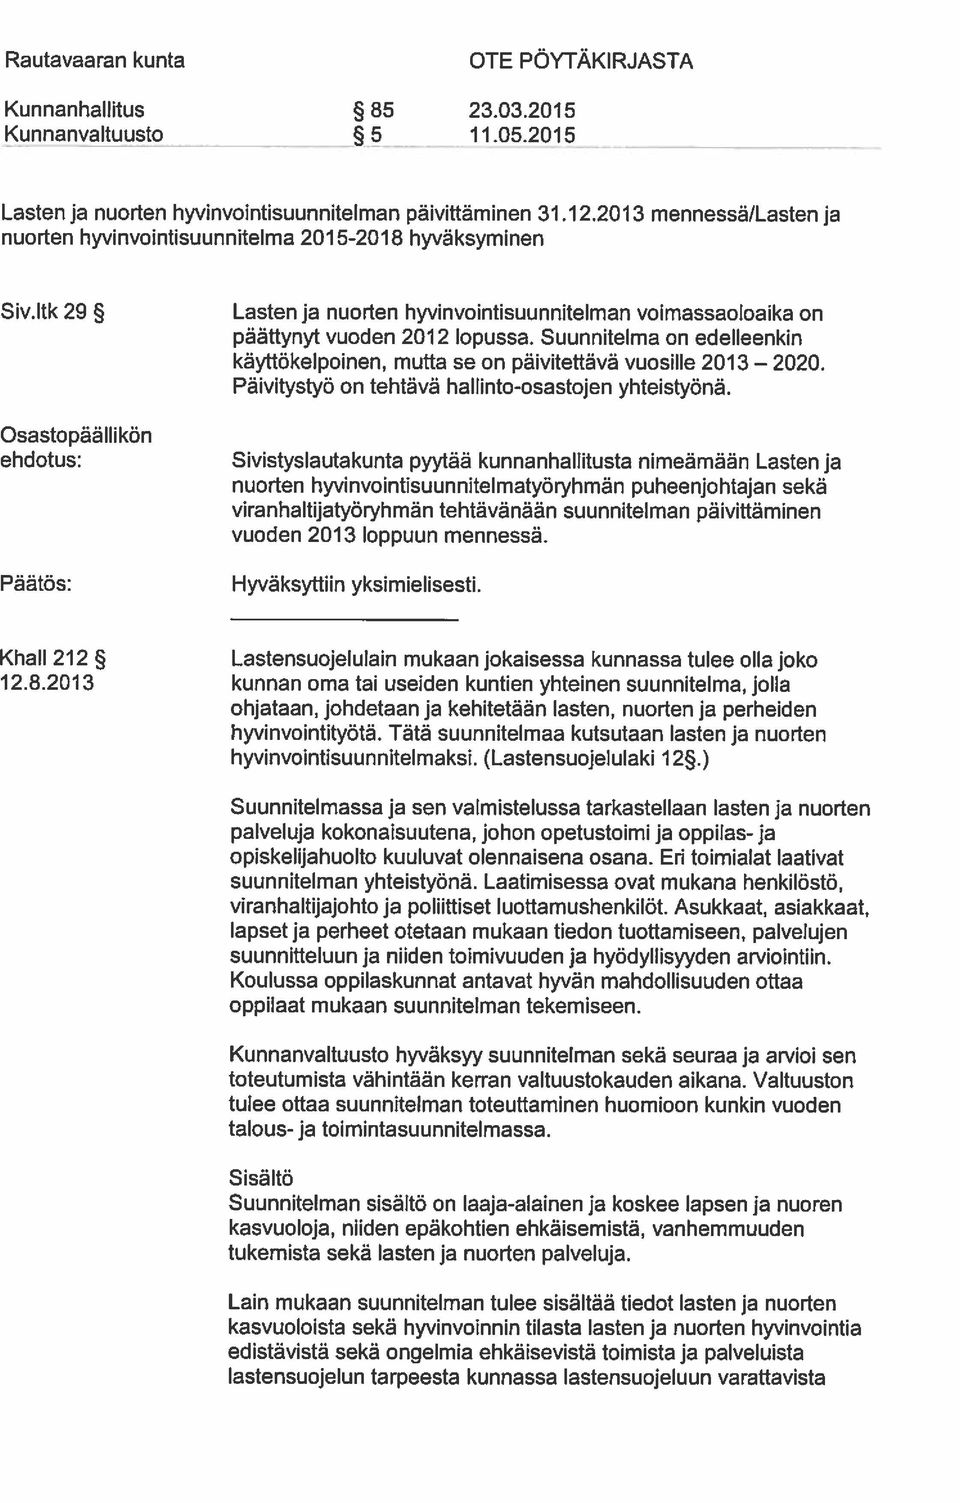 Itk 29 Dsastopäâllikön ehdotus: Pãätös: Lasten ja nuoden hyvinvointisuunnitelman voimassaoloaika on päättynyt vuoden 2012 lopussa.